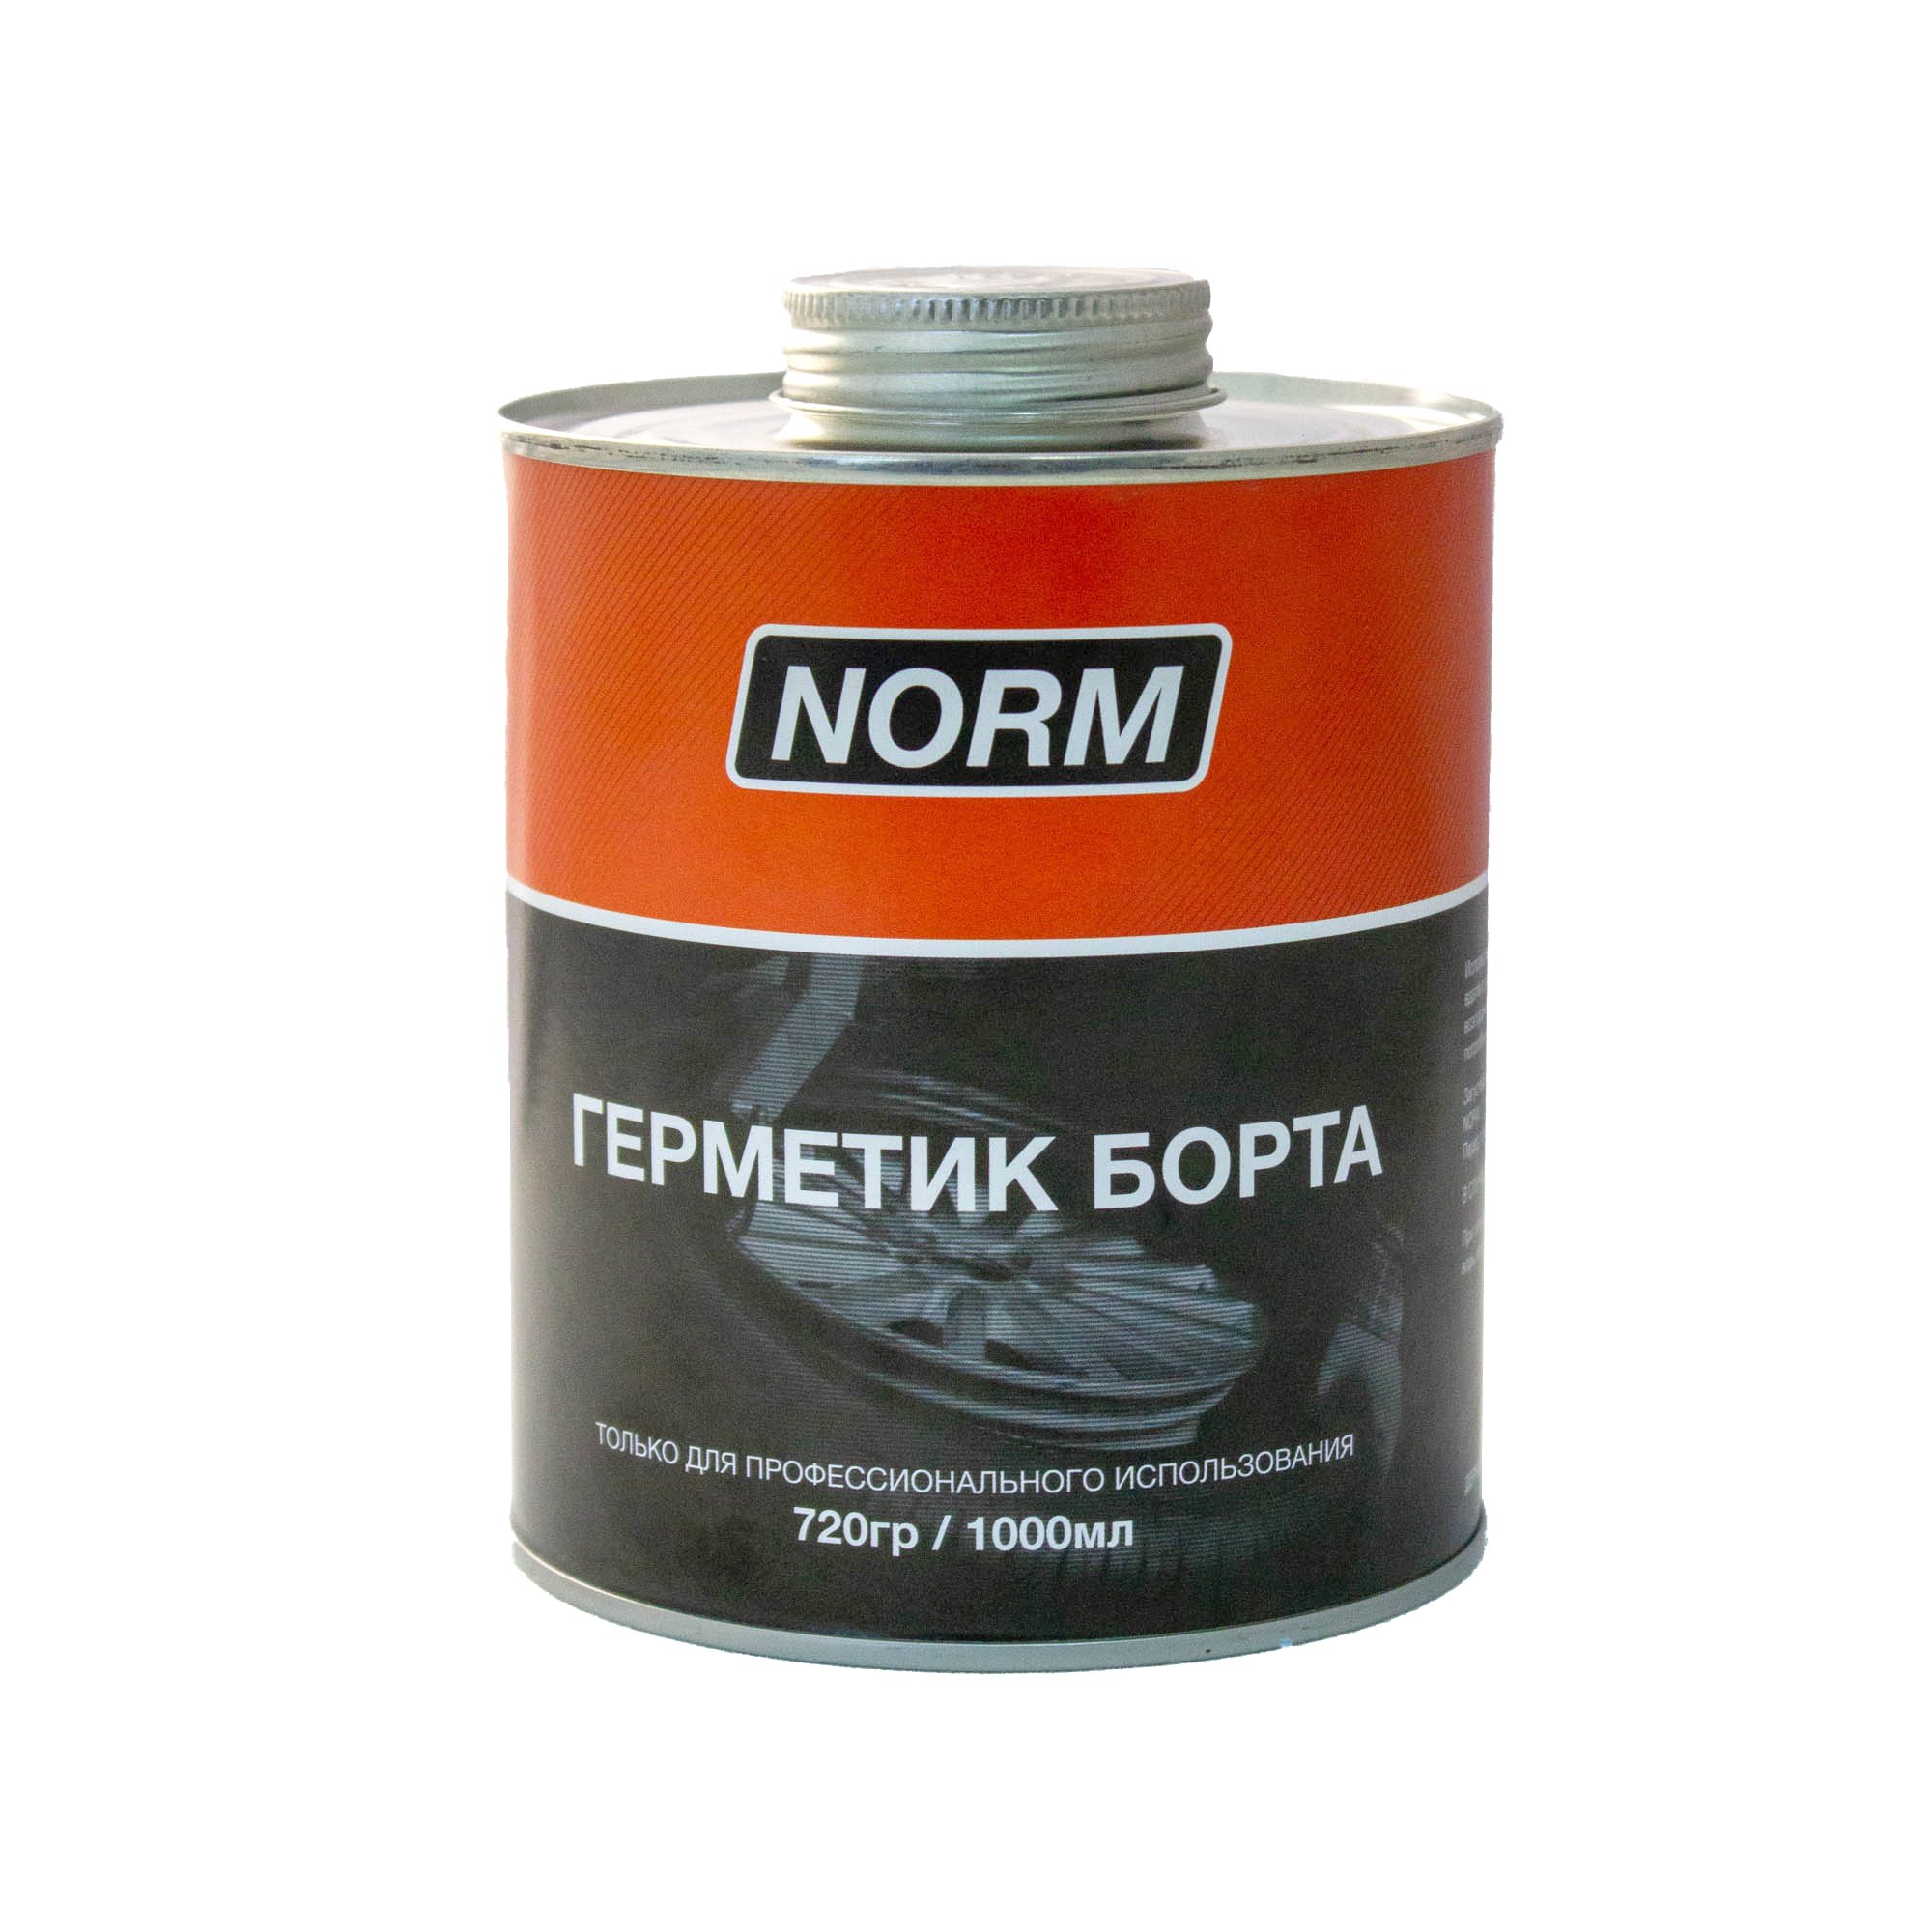 Уплотнитель бортов (герметик борта) НОРМ 1.0л  